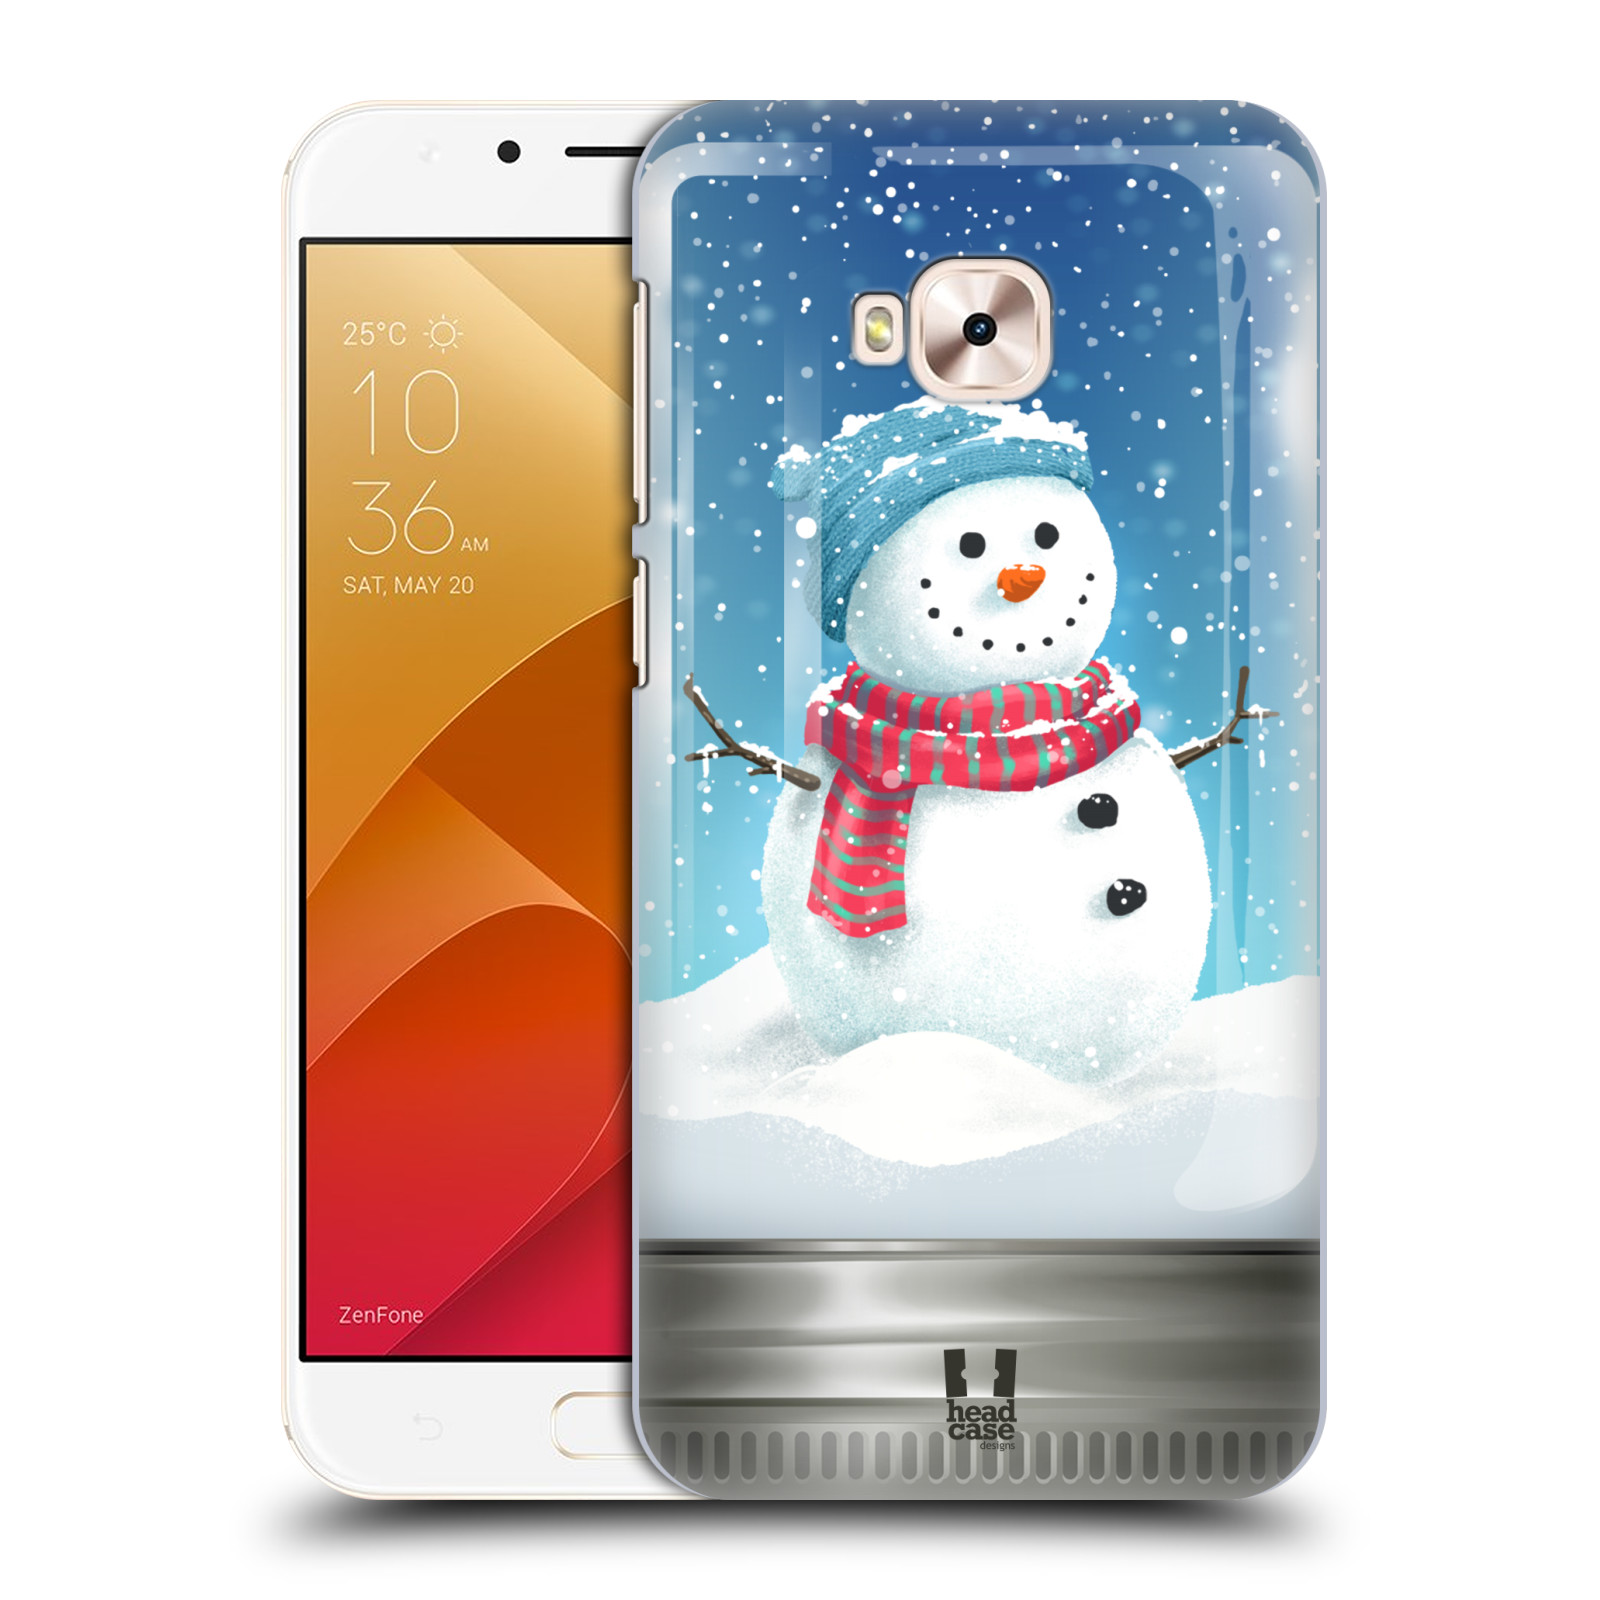 HEAD CASE plastový obal na mobil Asus Zenfone 4 Selfie Pro ZD552KL vzor Vánoce v těžítku SNĚHULÁK